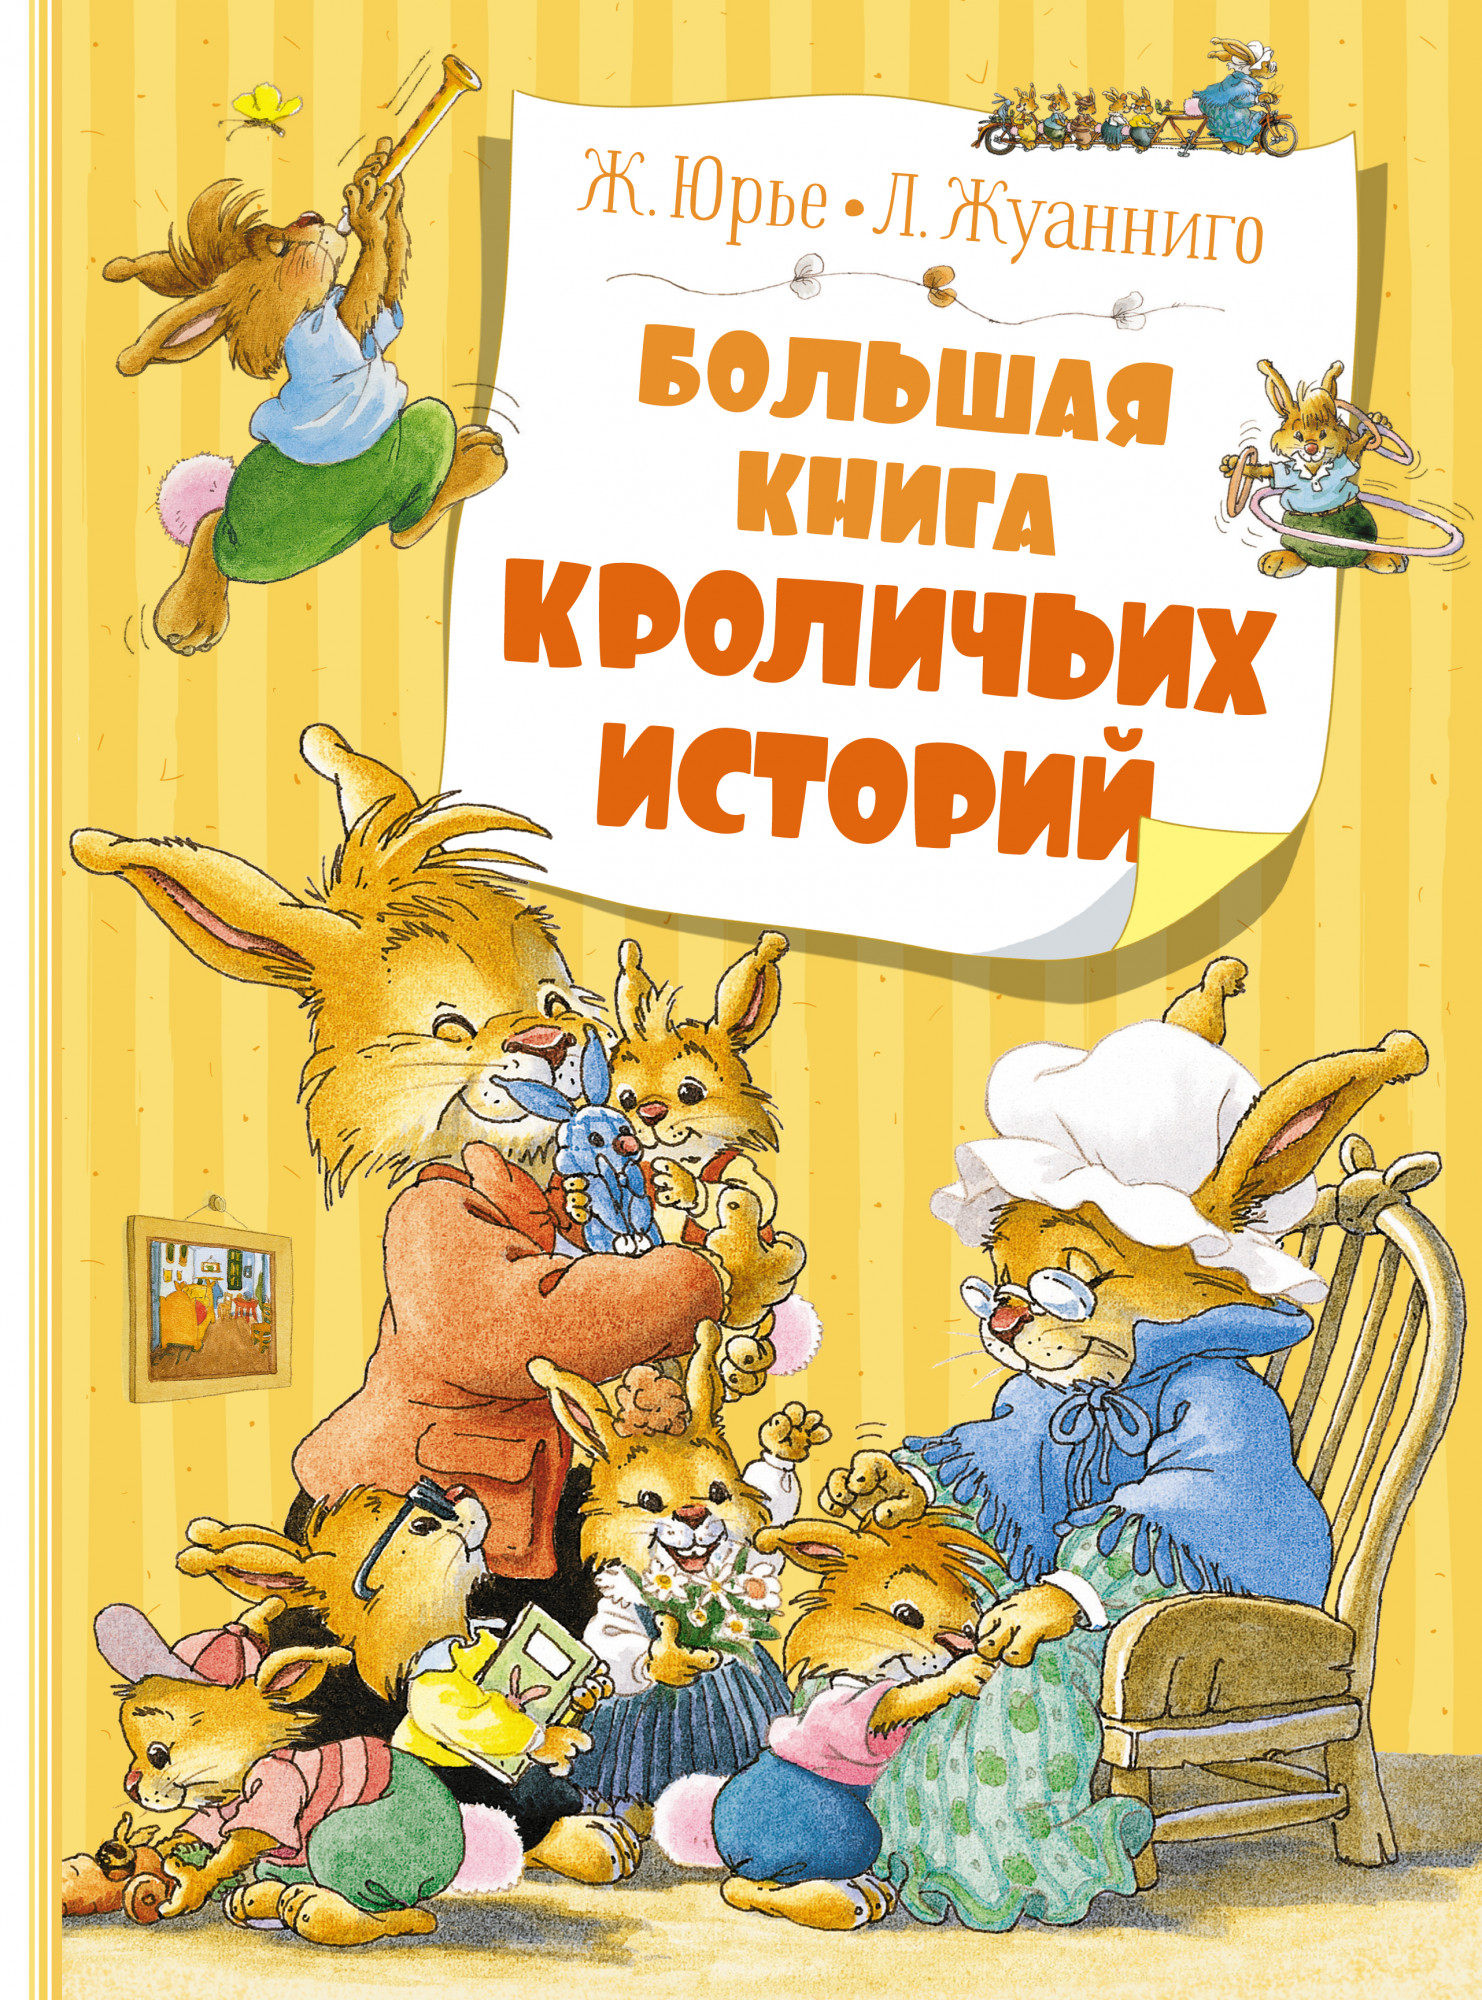 Юрье Женевьева Большая книга кроличьих историй (новое оформление)